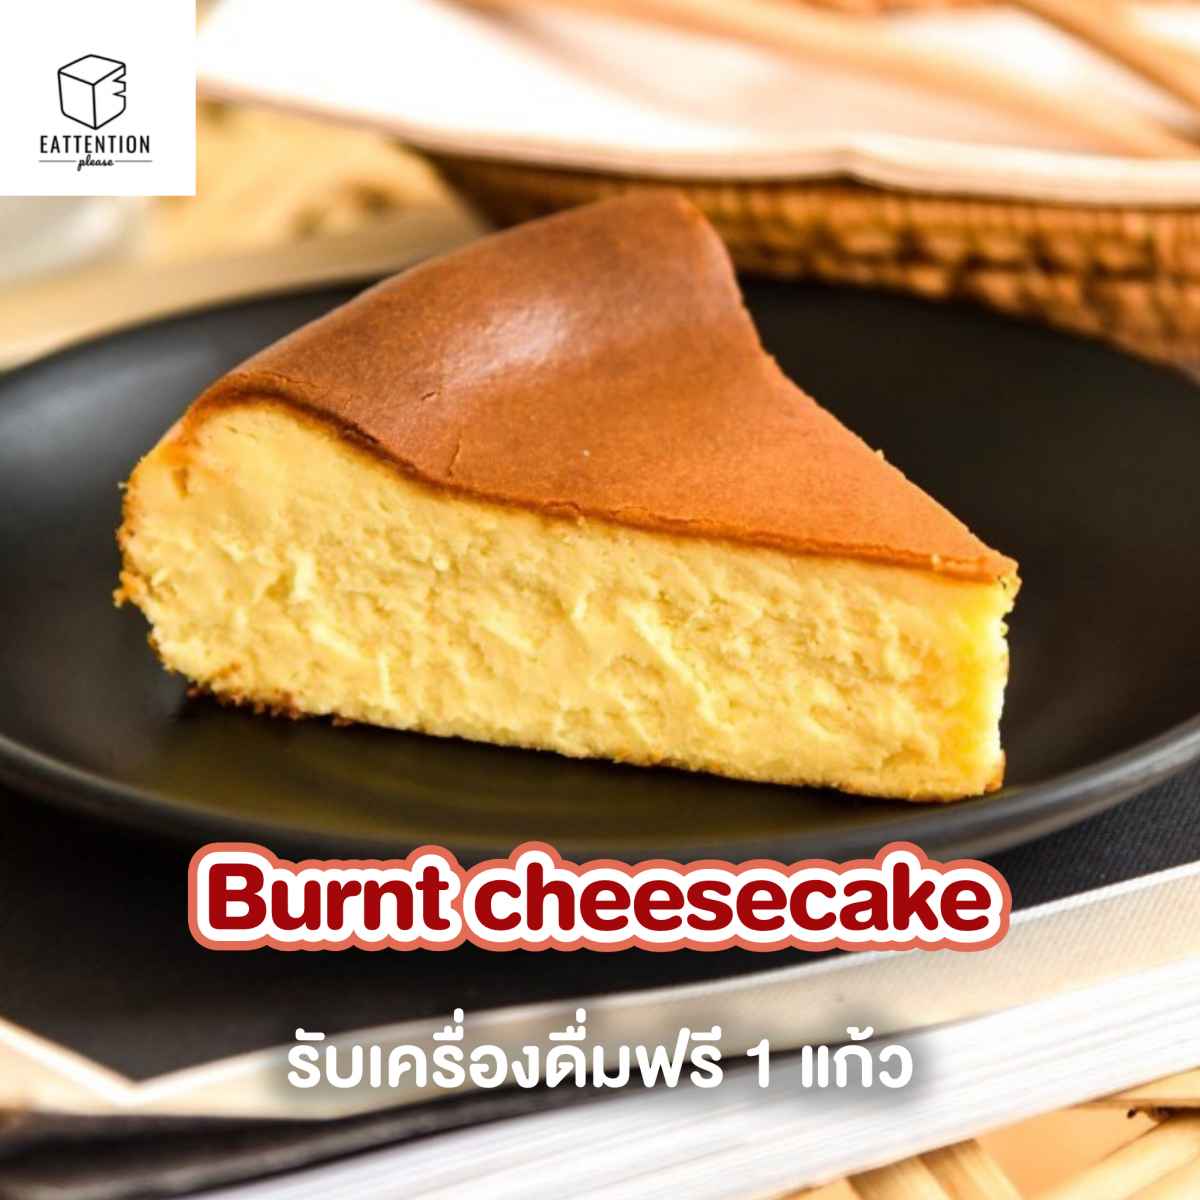 Burnt cheesecake